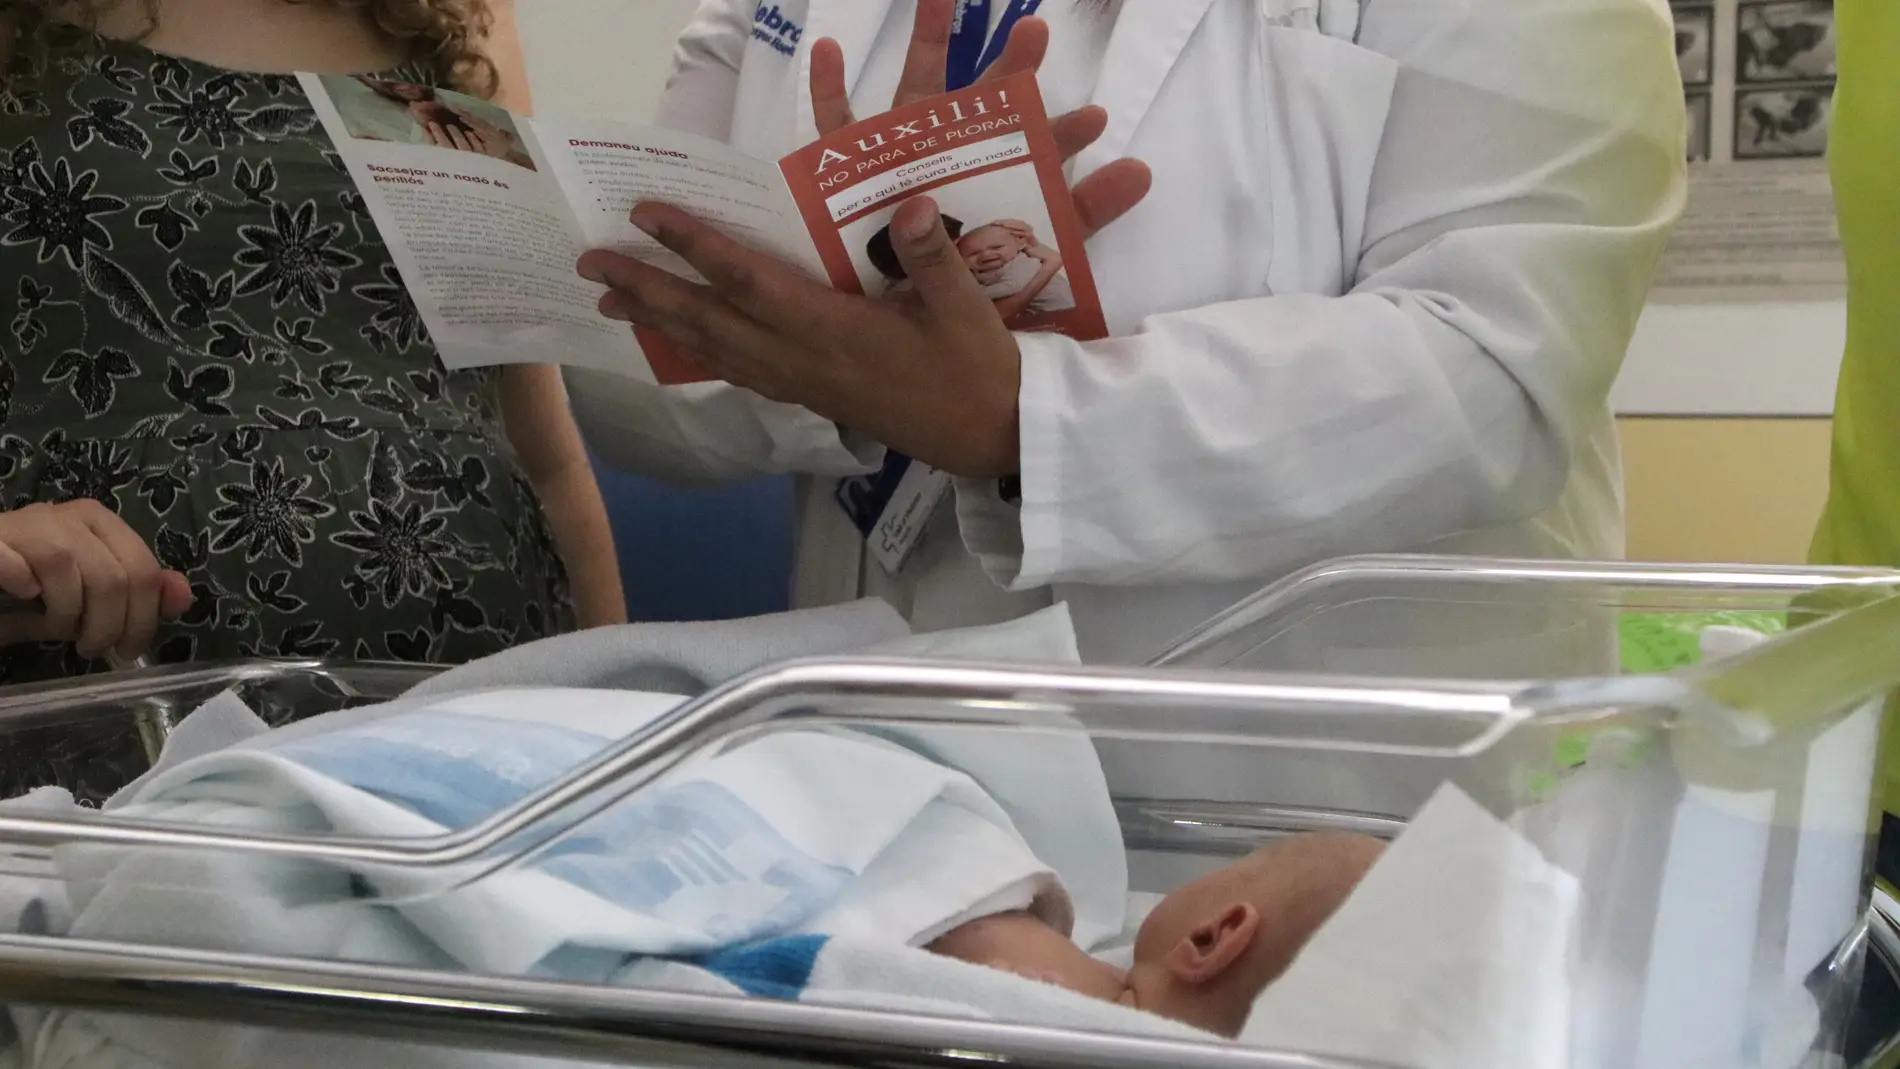 El Hospital Infantil de la Vall d'Hebron ha puesto en marcha un programa para prevenir el síndrome del bebé sacudido